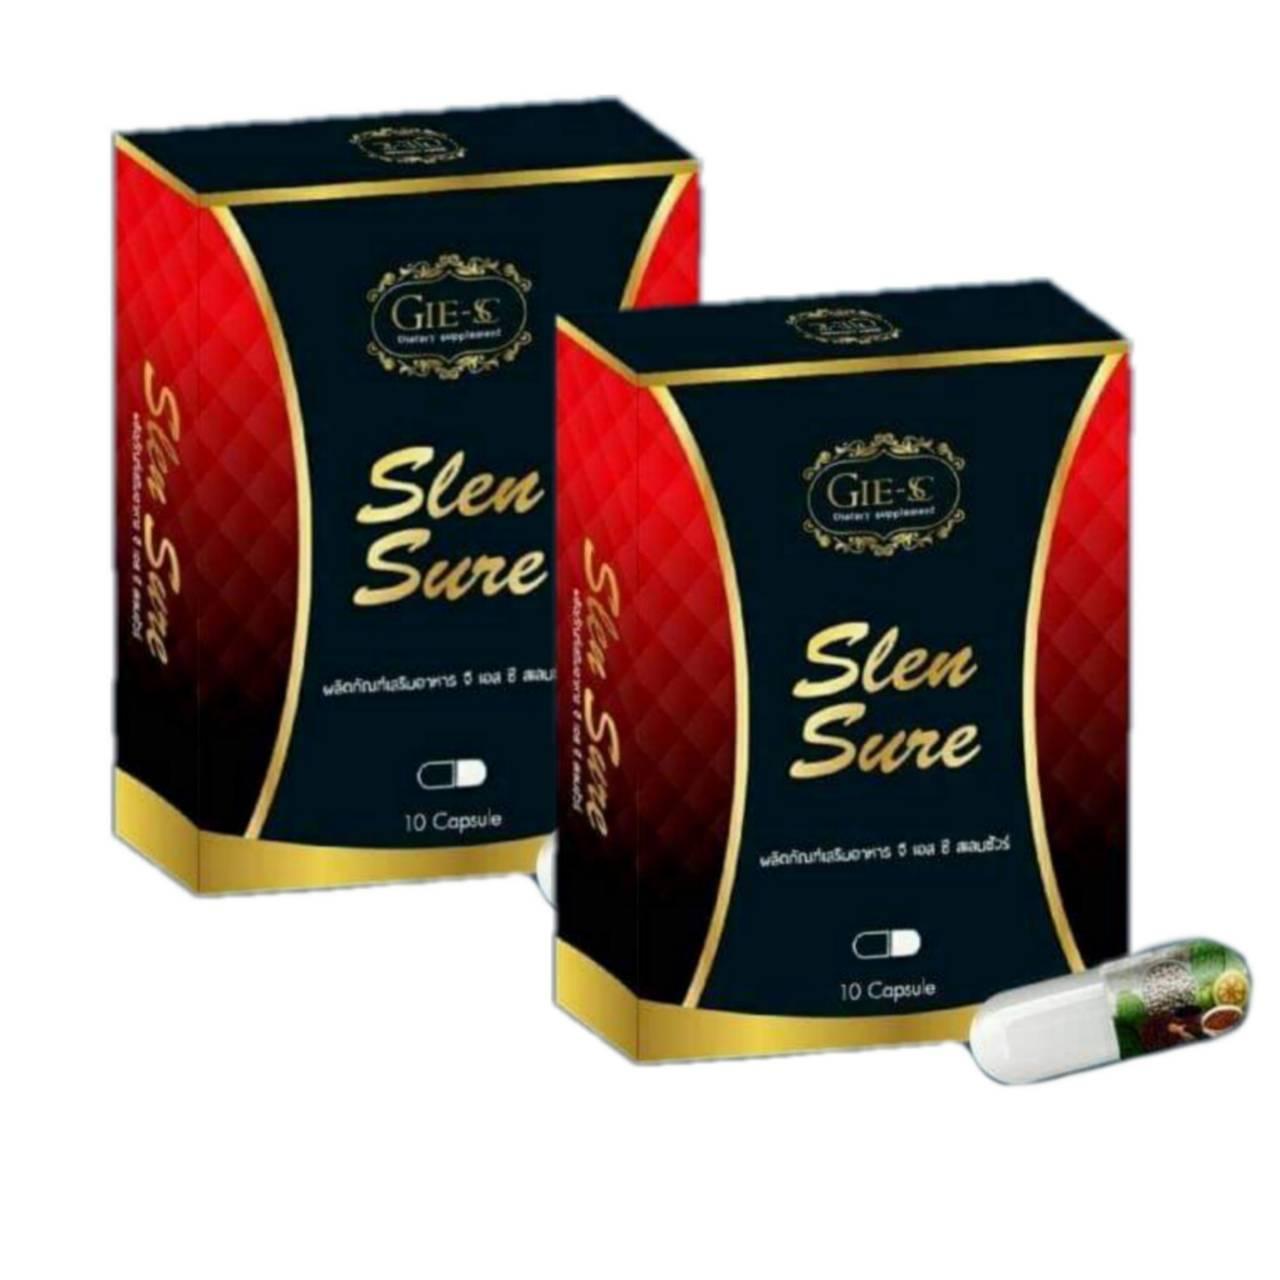 สเลนชัวร์  Slen Sure  แพ็คเก็จใหม่ เป็นยาช่วยลดน้ำหนัก 10 แค็บซูน 2 กล่อง